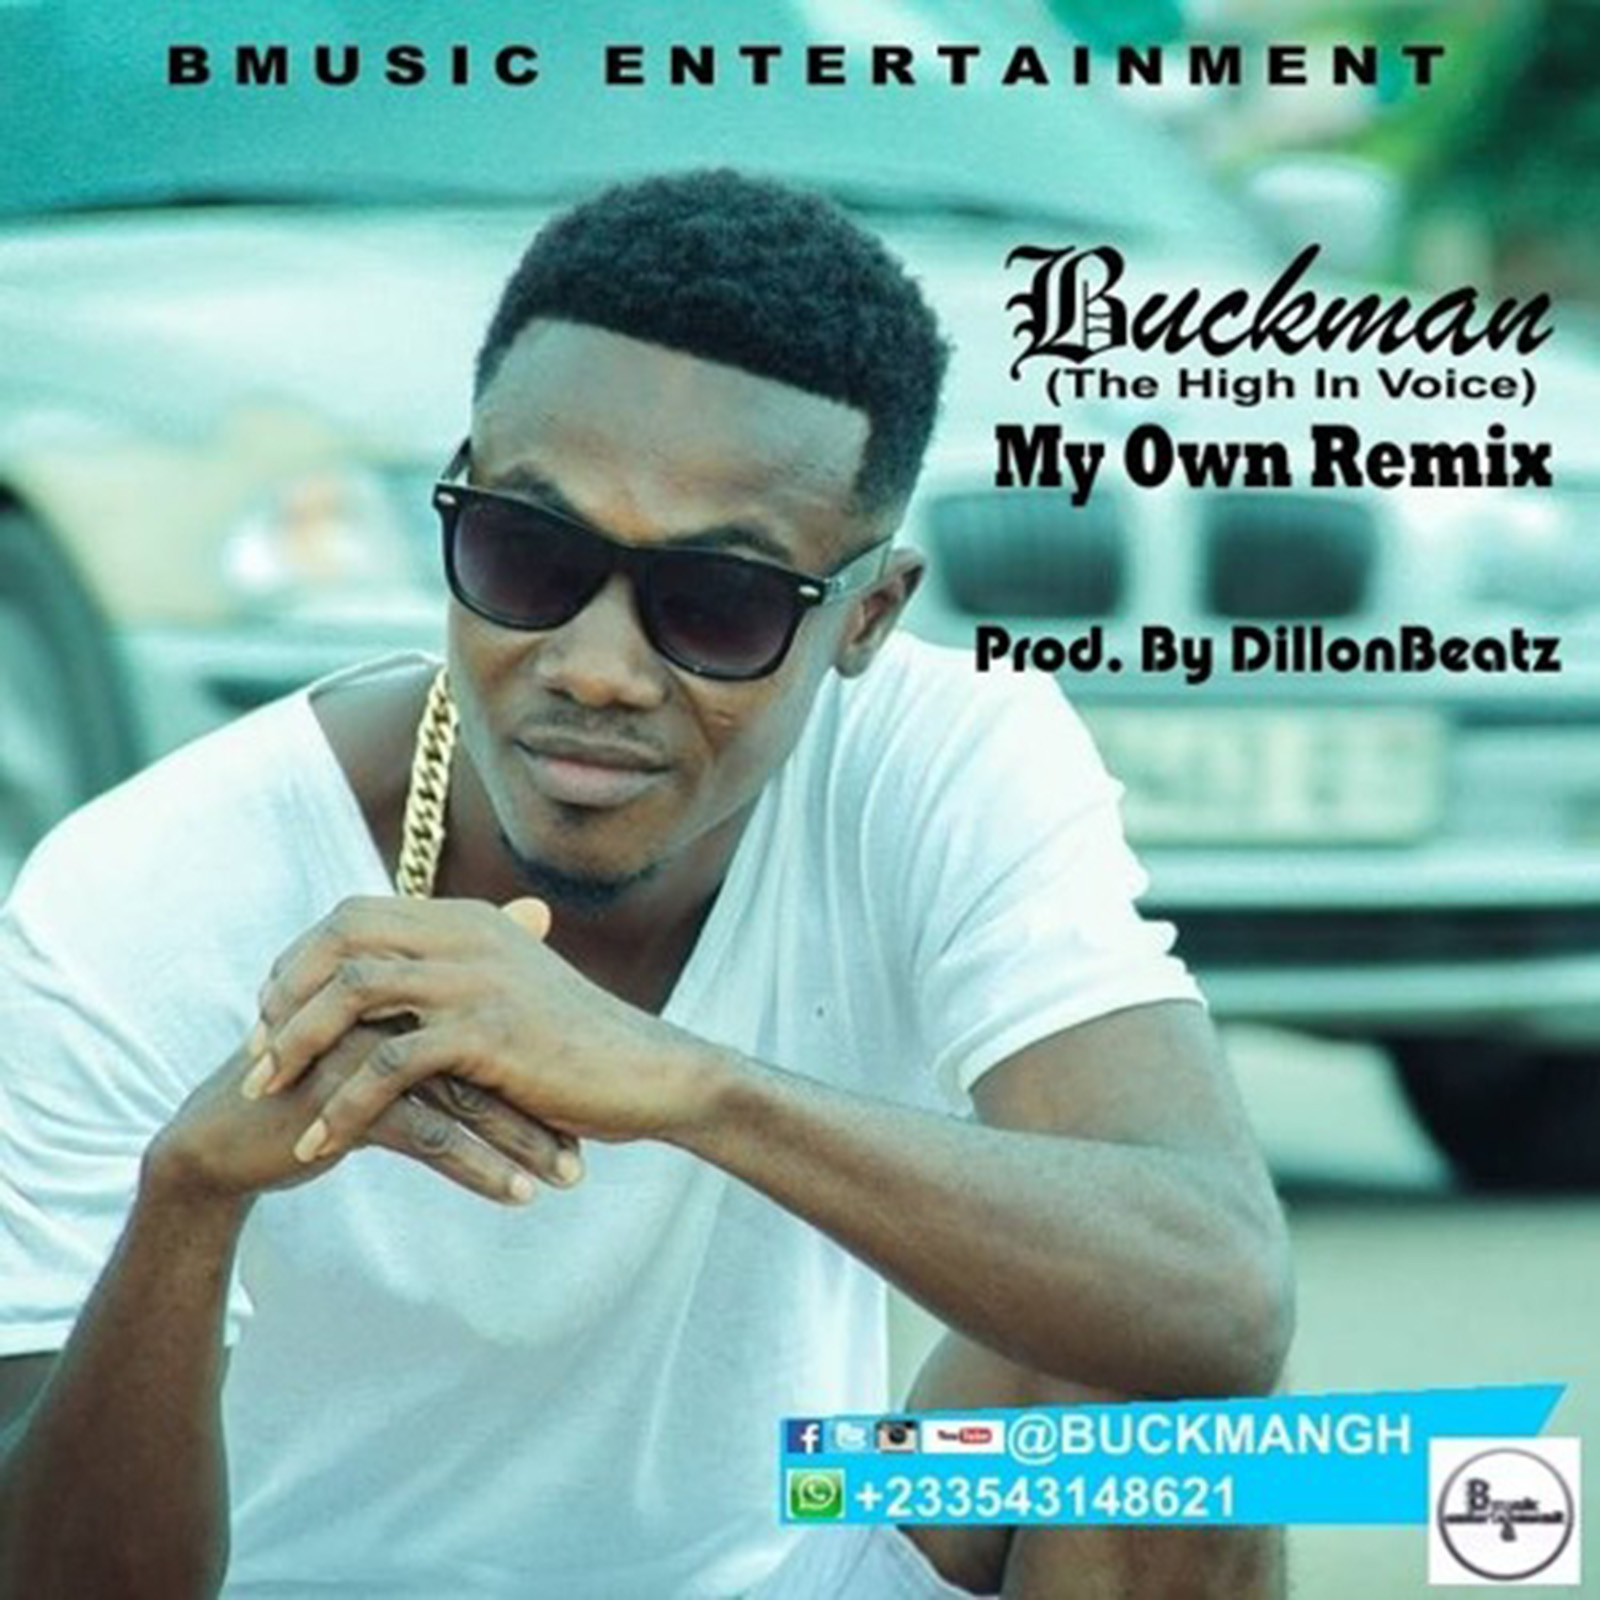 My Own Remix by Buckman